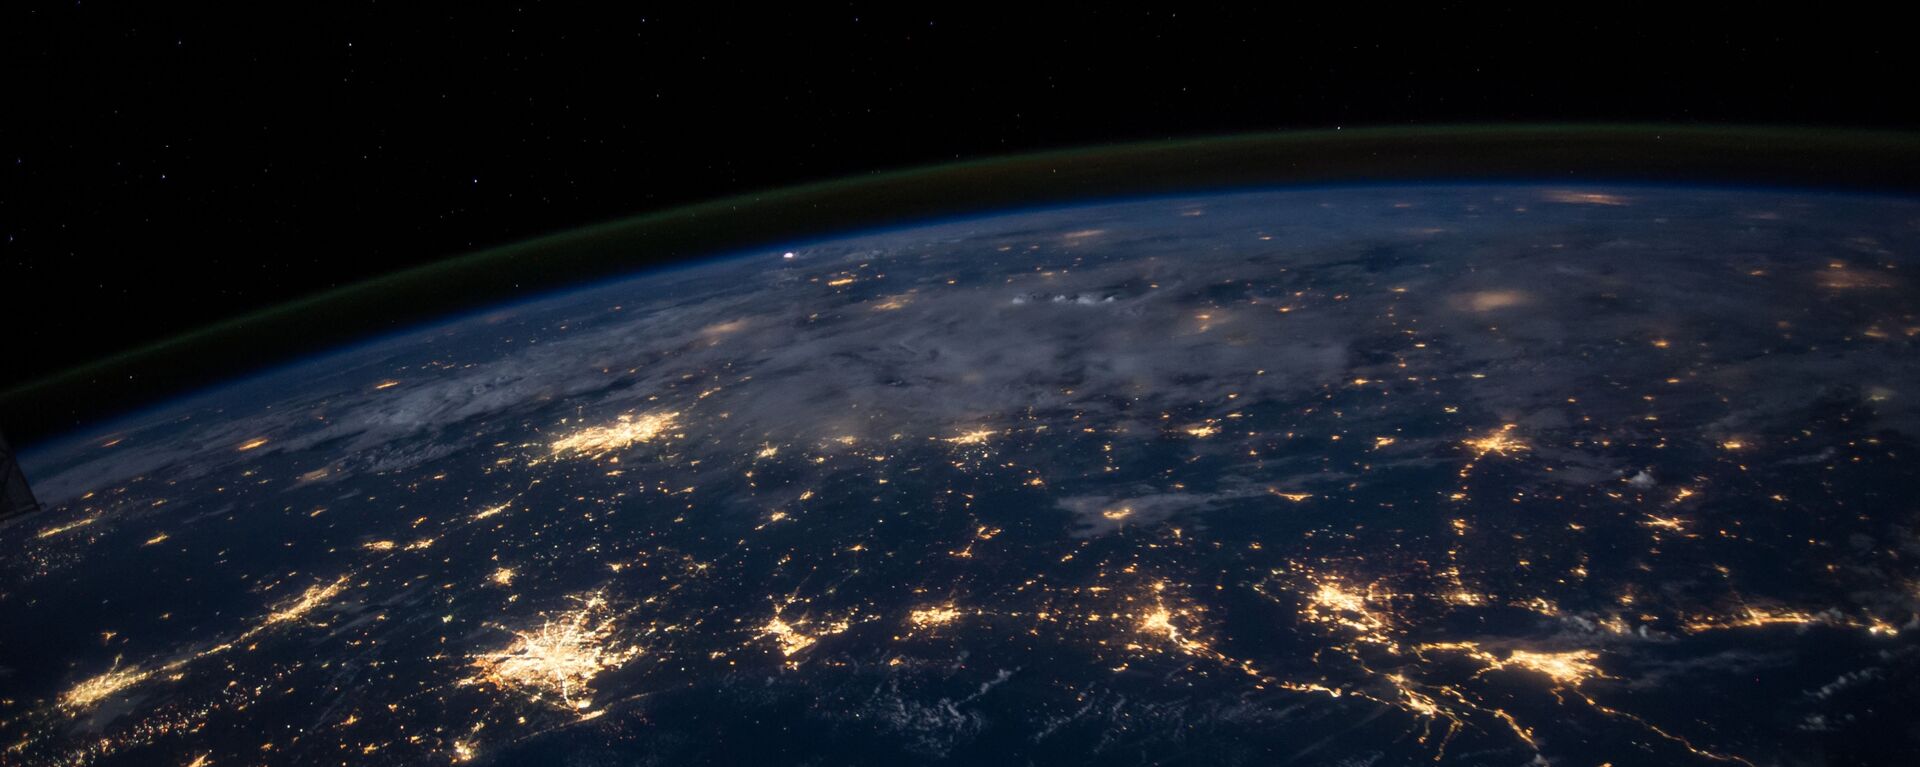 La Tierra vista desde el espacio (imagen referencial) - Sputnik Mundo, 1920, 12.03.2021